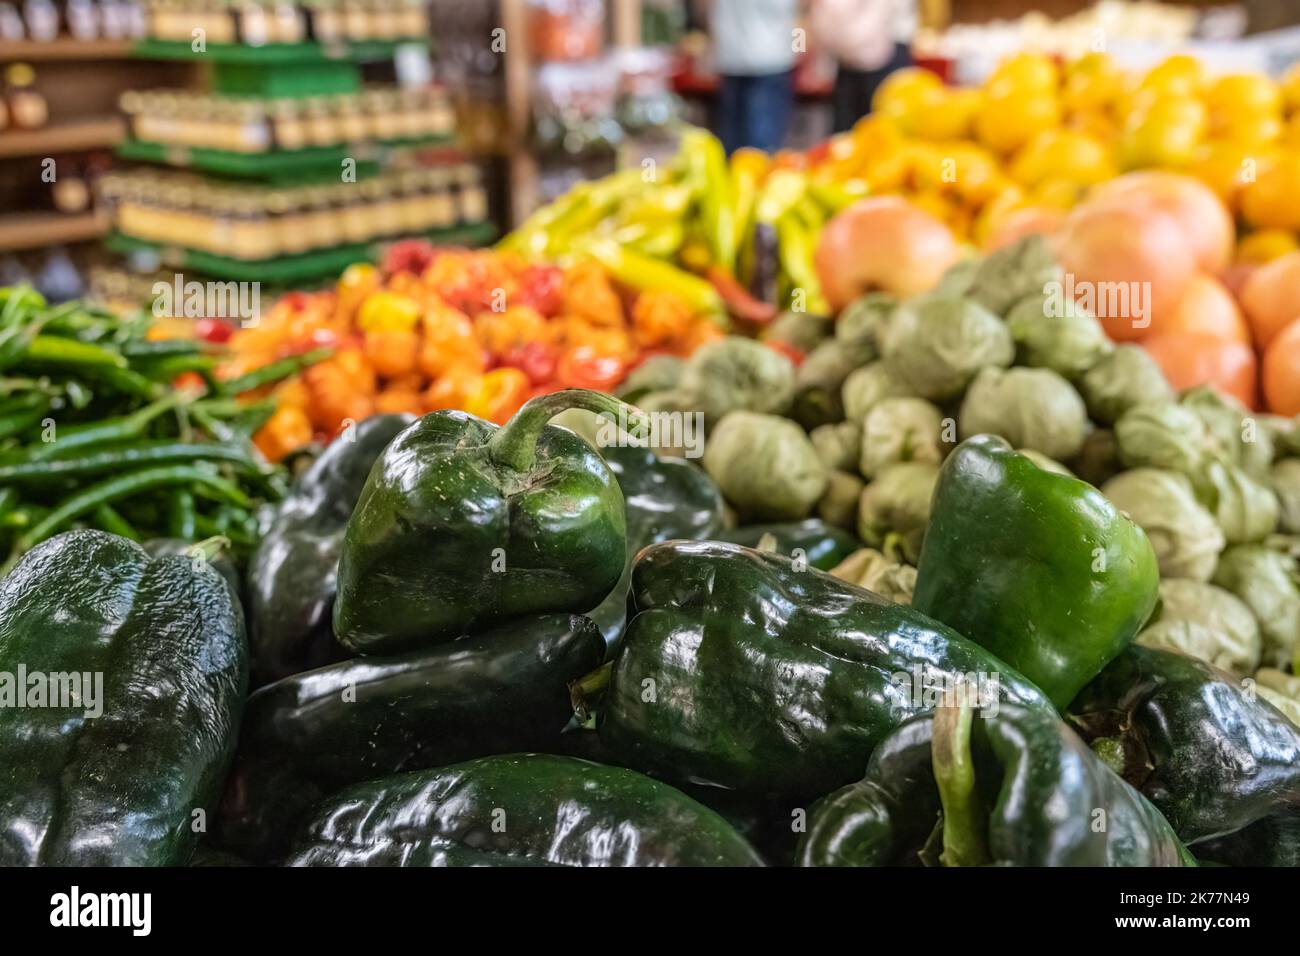 Der Jaemor Farm Market in Alto, Georgia, ist bei Einheimischen und Touristen beliebt, da er frisches Obst und Gemüse vom Bauernhof bietet. (USA) Stockfoto